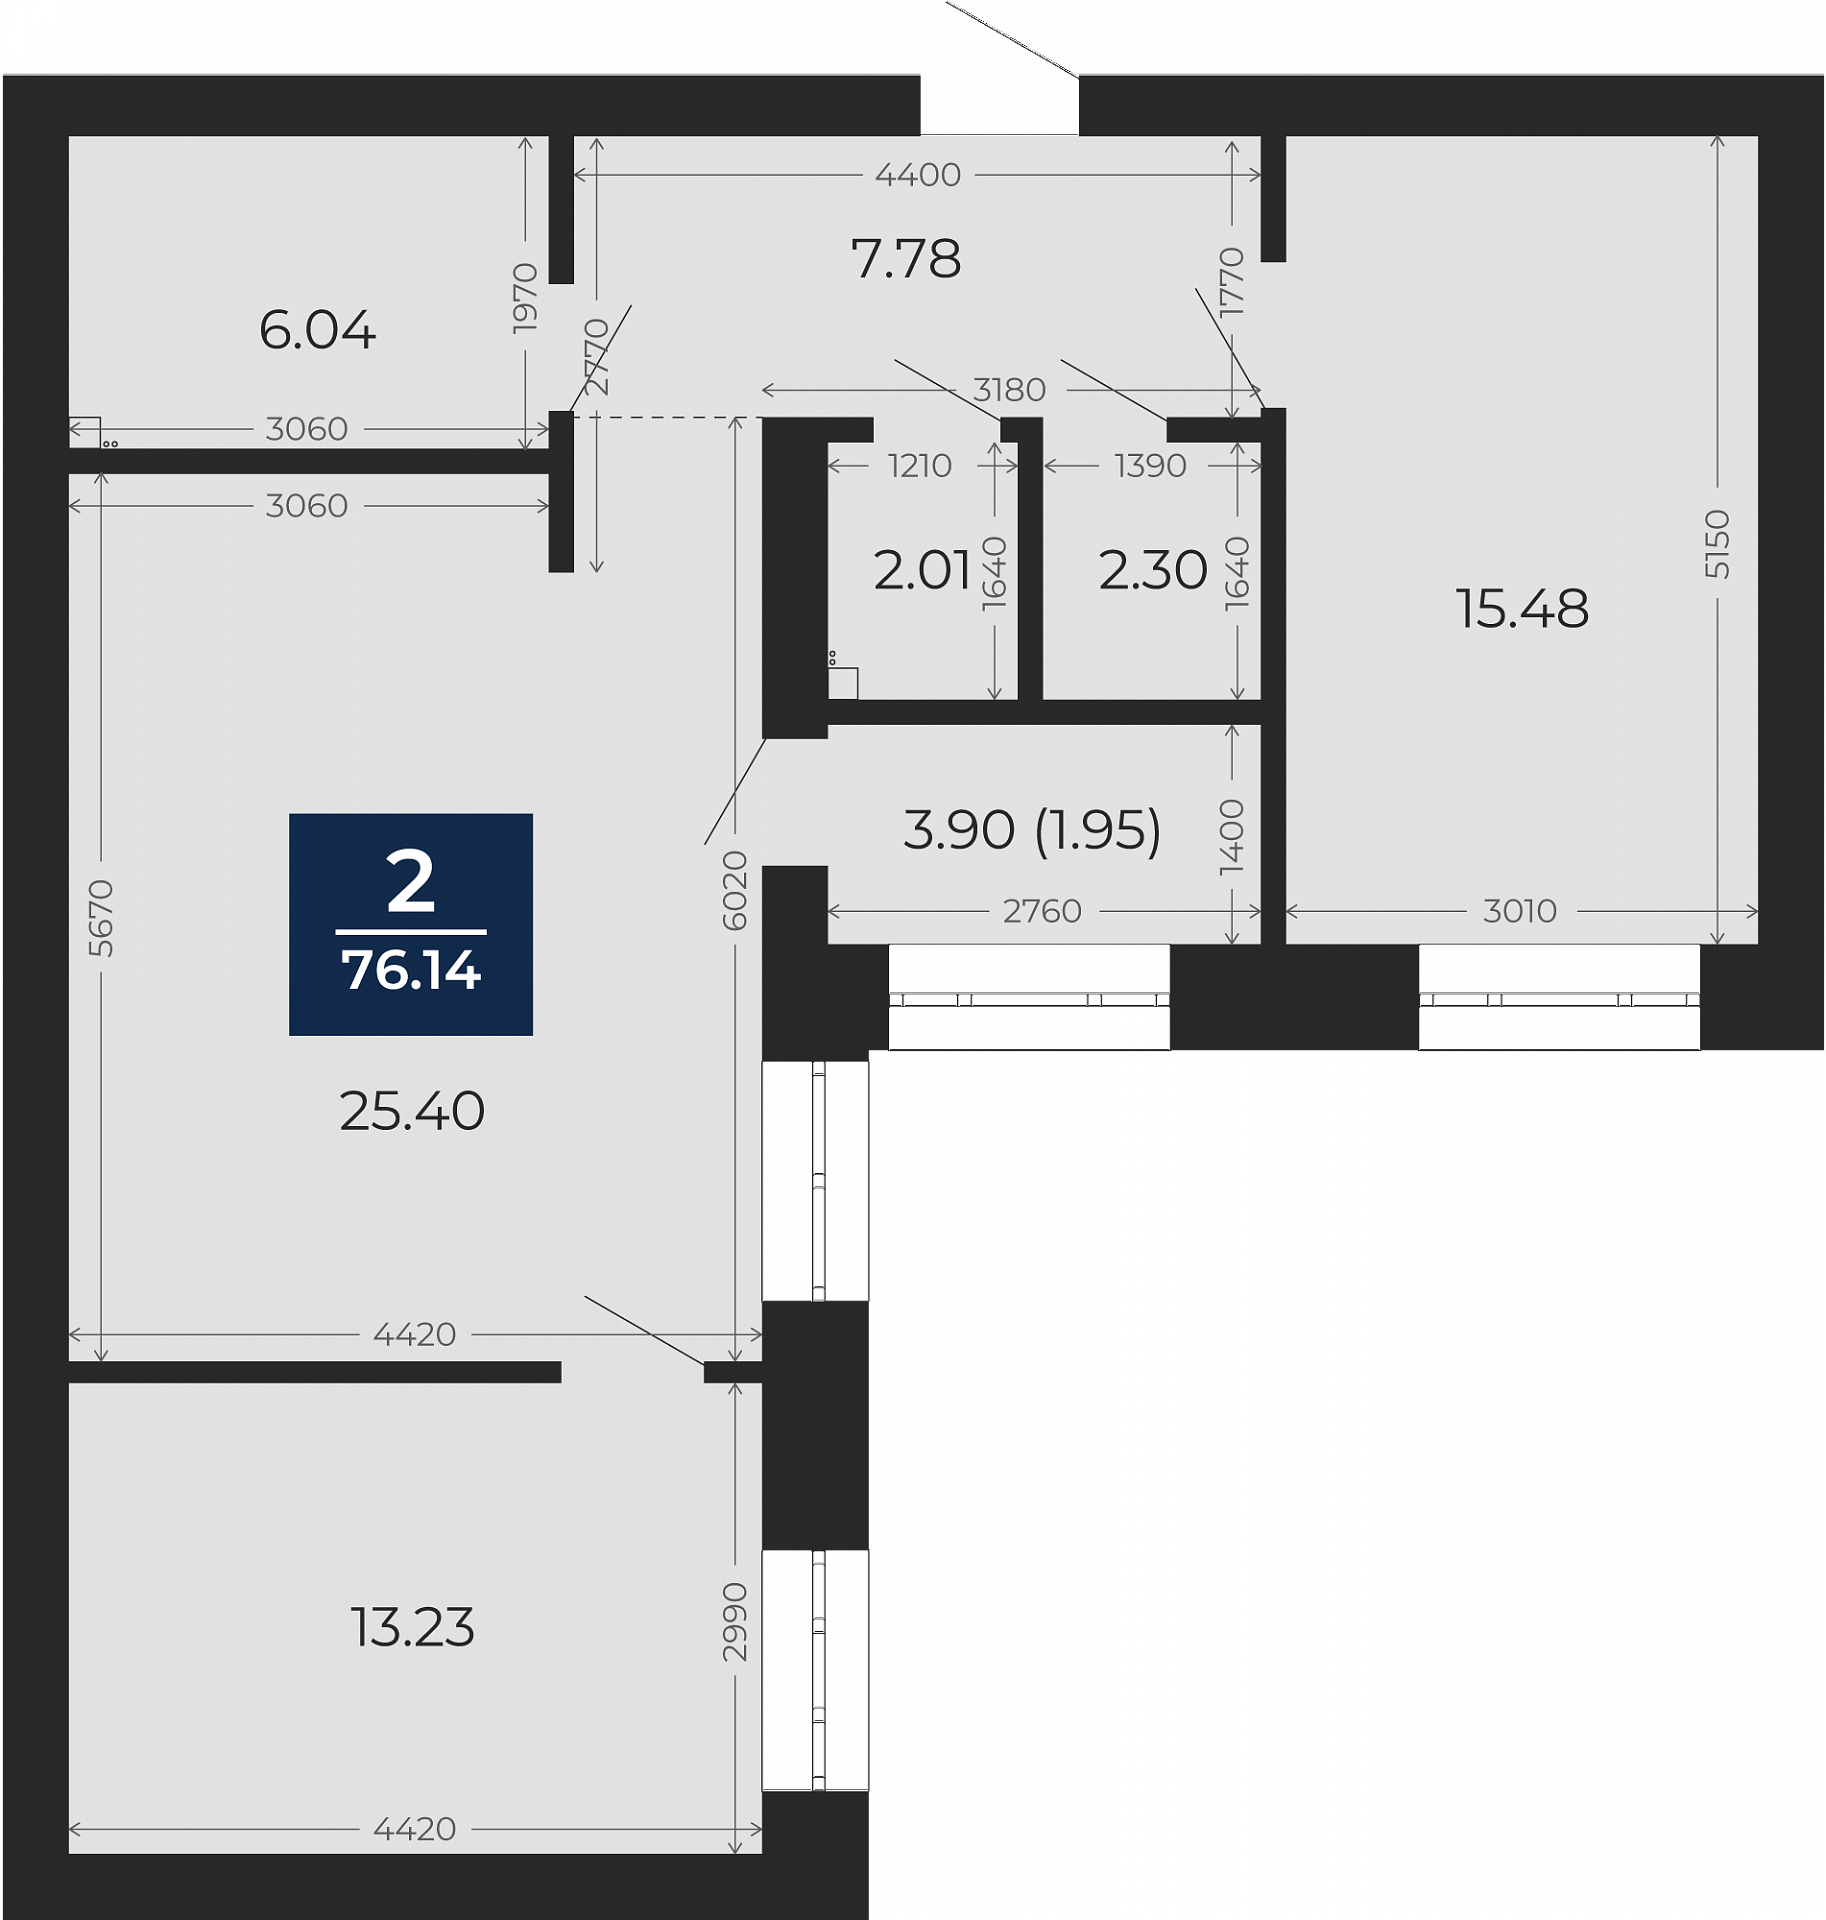 Квартира № 51, 2-комнатная, 76.14 кв. м, 2 этаж